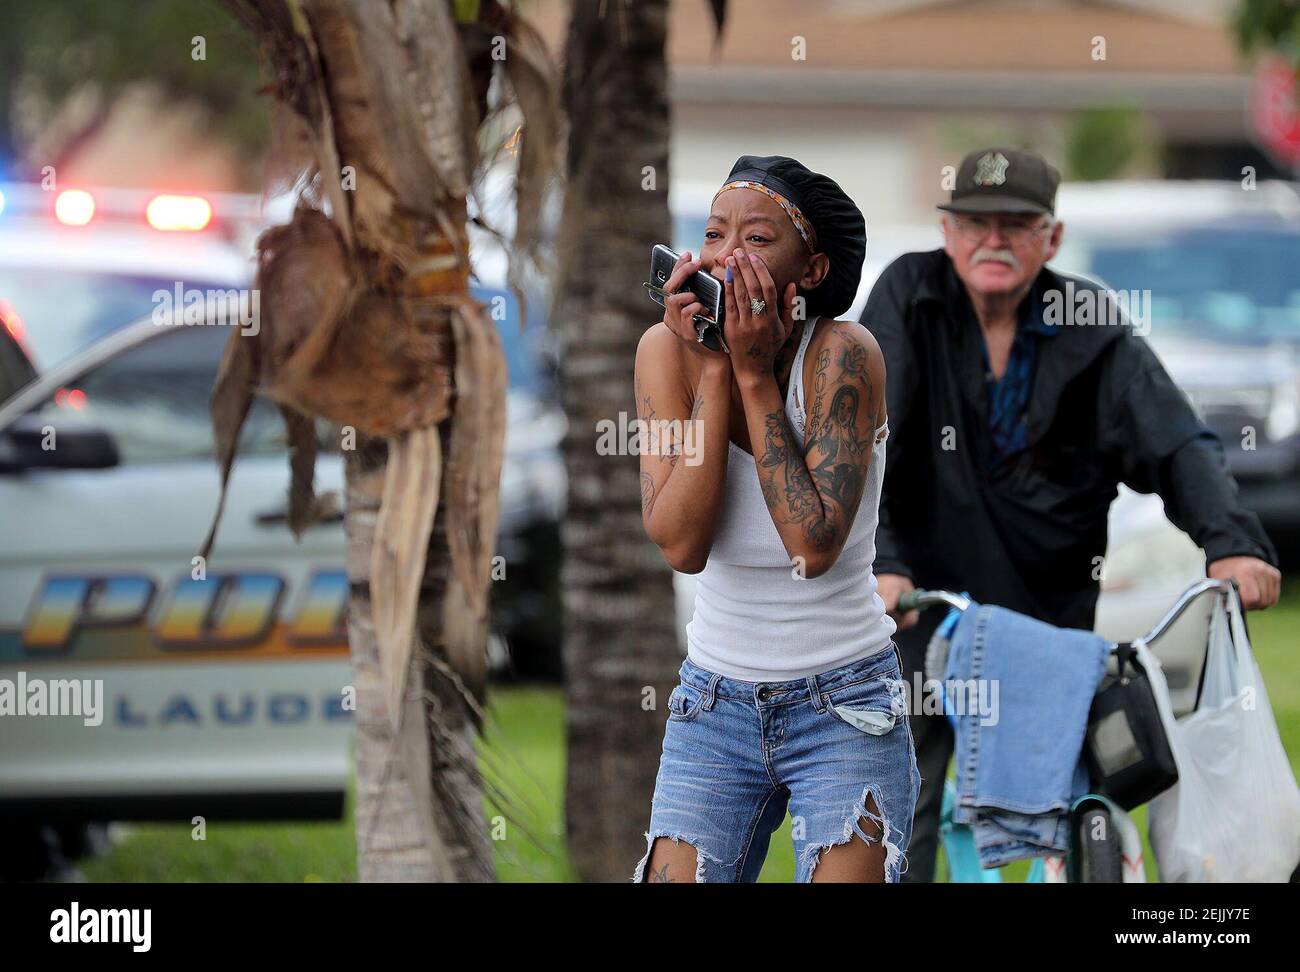 Une femme réagit aux nouvelles de deux jeunes filles qui ont été écrasées avec une machette à Lauderhill, Floride, le 14 février 17, 2020. (Mike stocker/Sun Sentinel/TNS) Banque D'Images